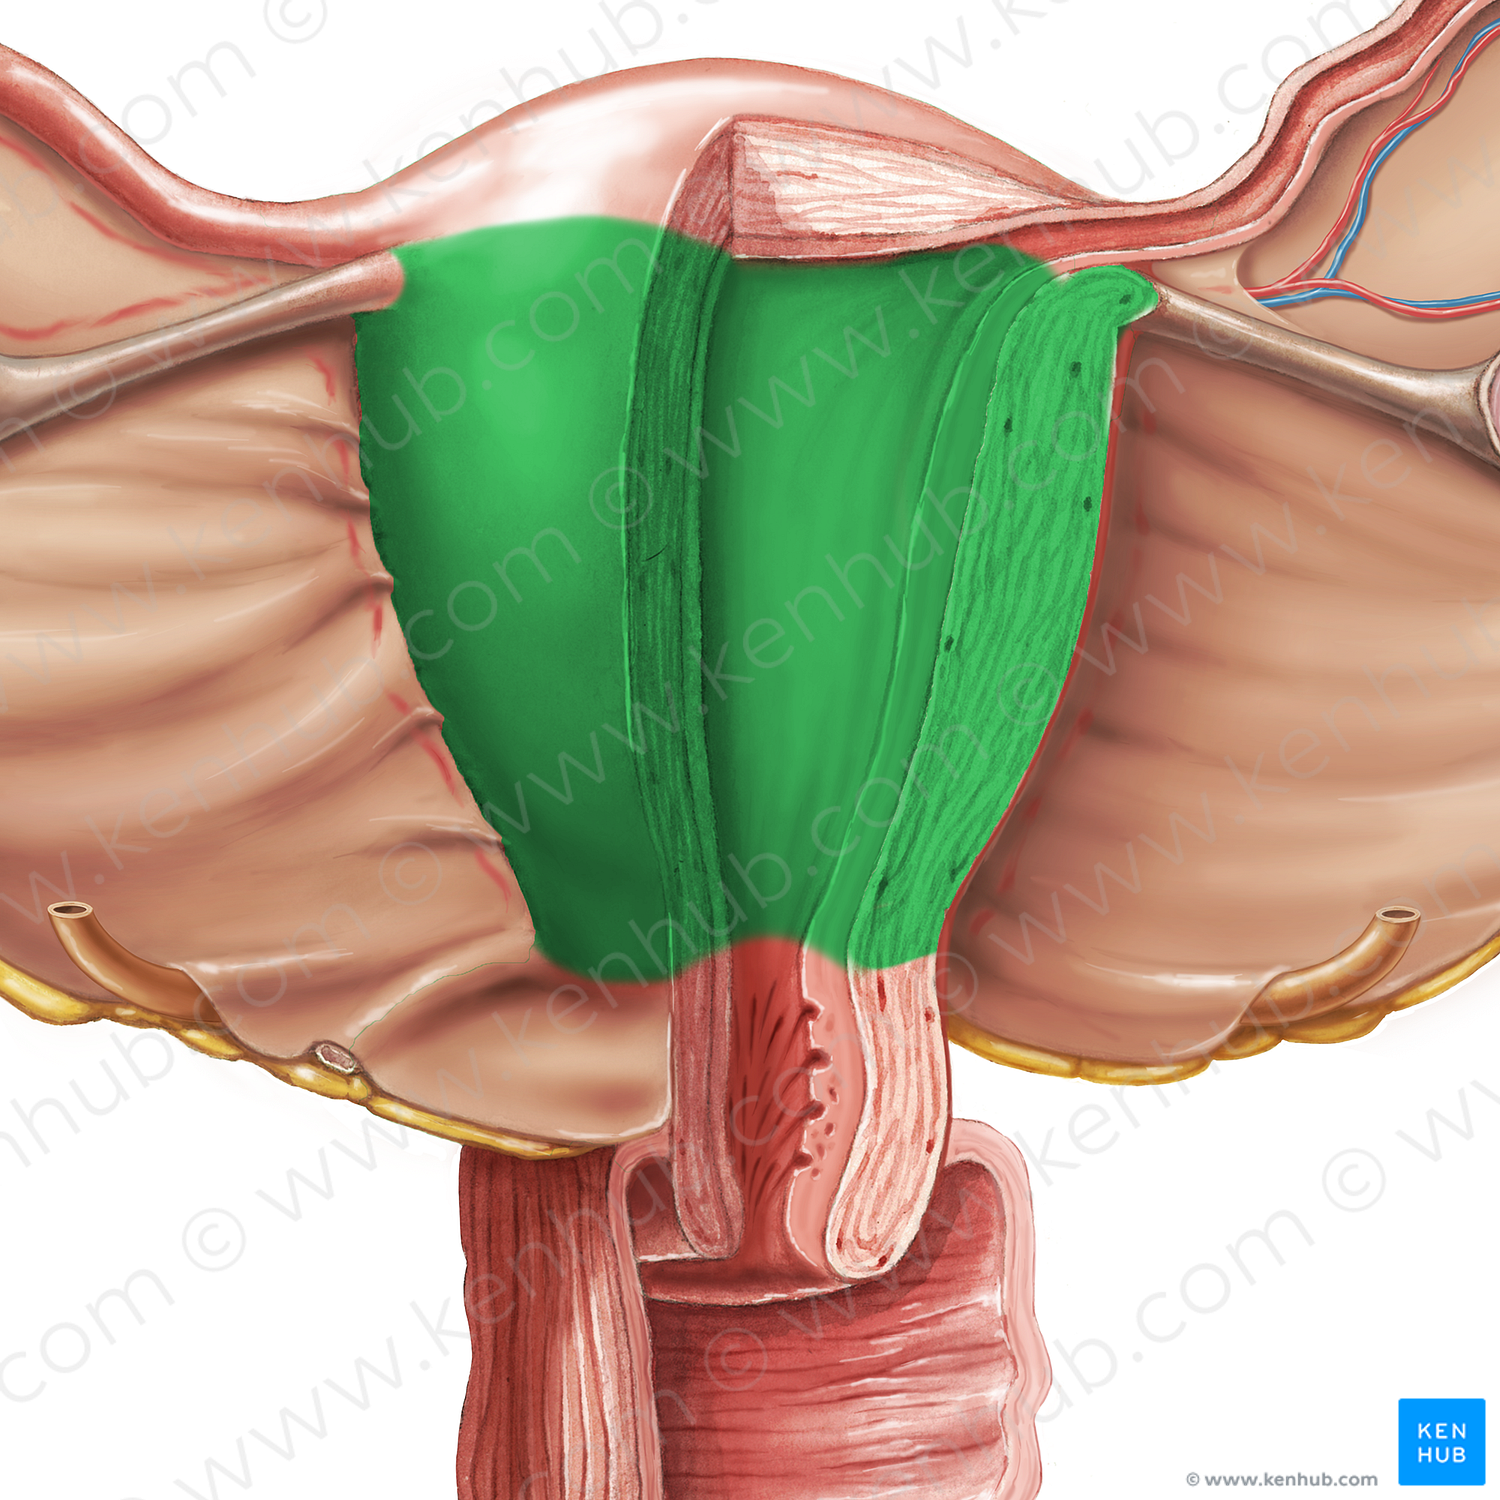 Body of uterus (#3005)